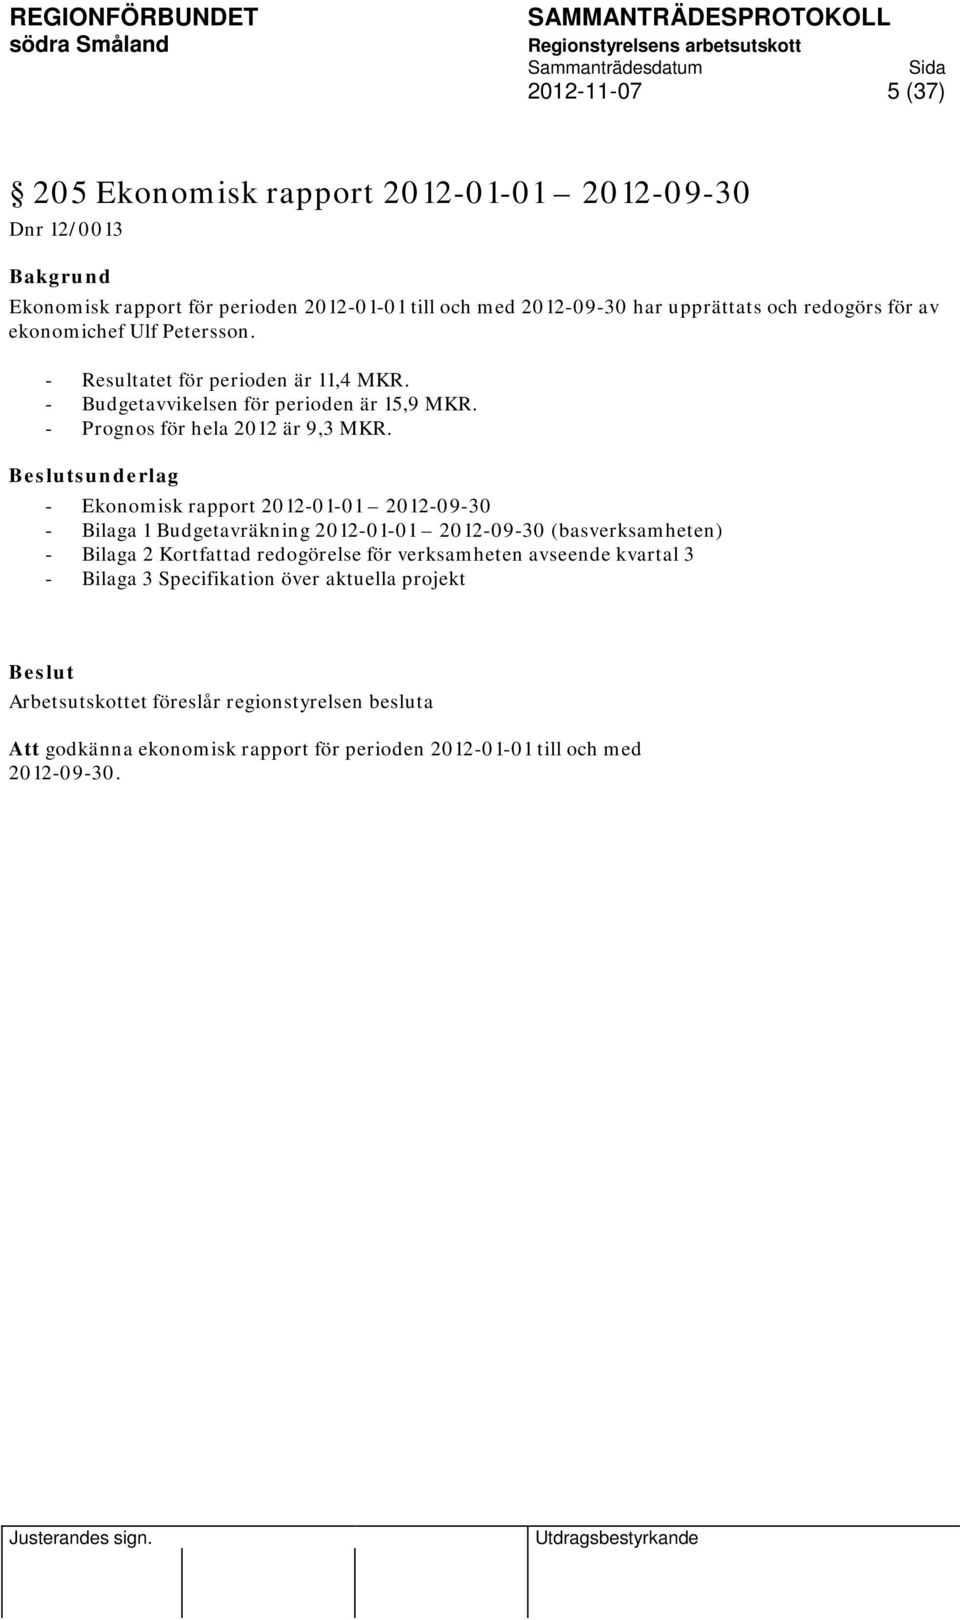 sunderlag - Ekonomisk rapport 2012-01-01 2012-09-30 - Bilaga 1 Budgetavräkning 2012-01-01 2012-09-30 (basverksamheten) - Bilaga 2 Kortfattad redogörelse för verksamheten